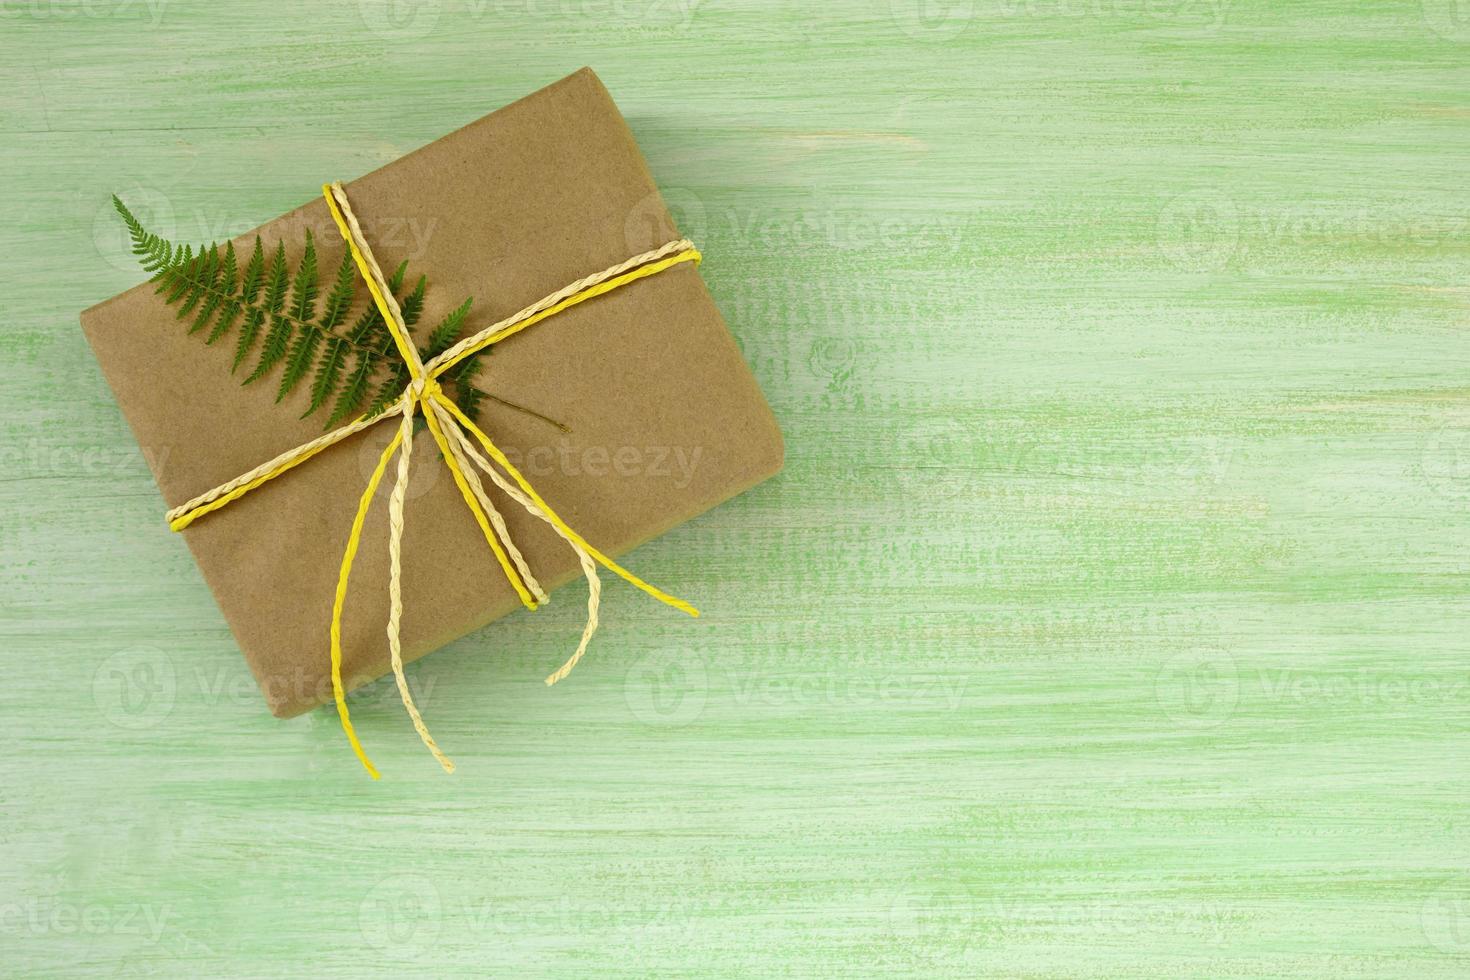 caja de regalo envuelta en papel artesanal y cinta blanca y amarilla con hoja de helecho sobre un fondo de madera verde, vista superior. foto